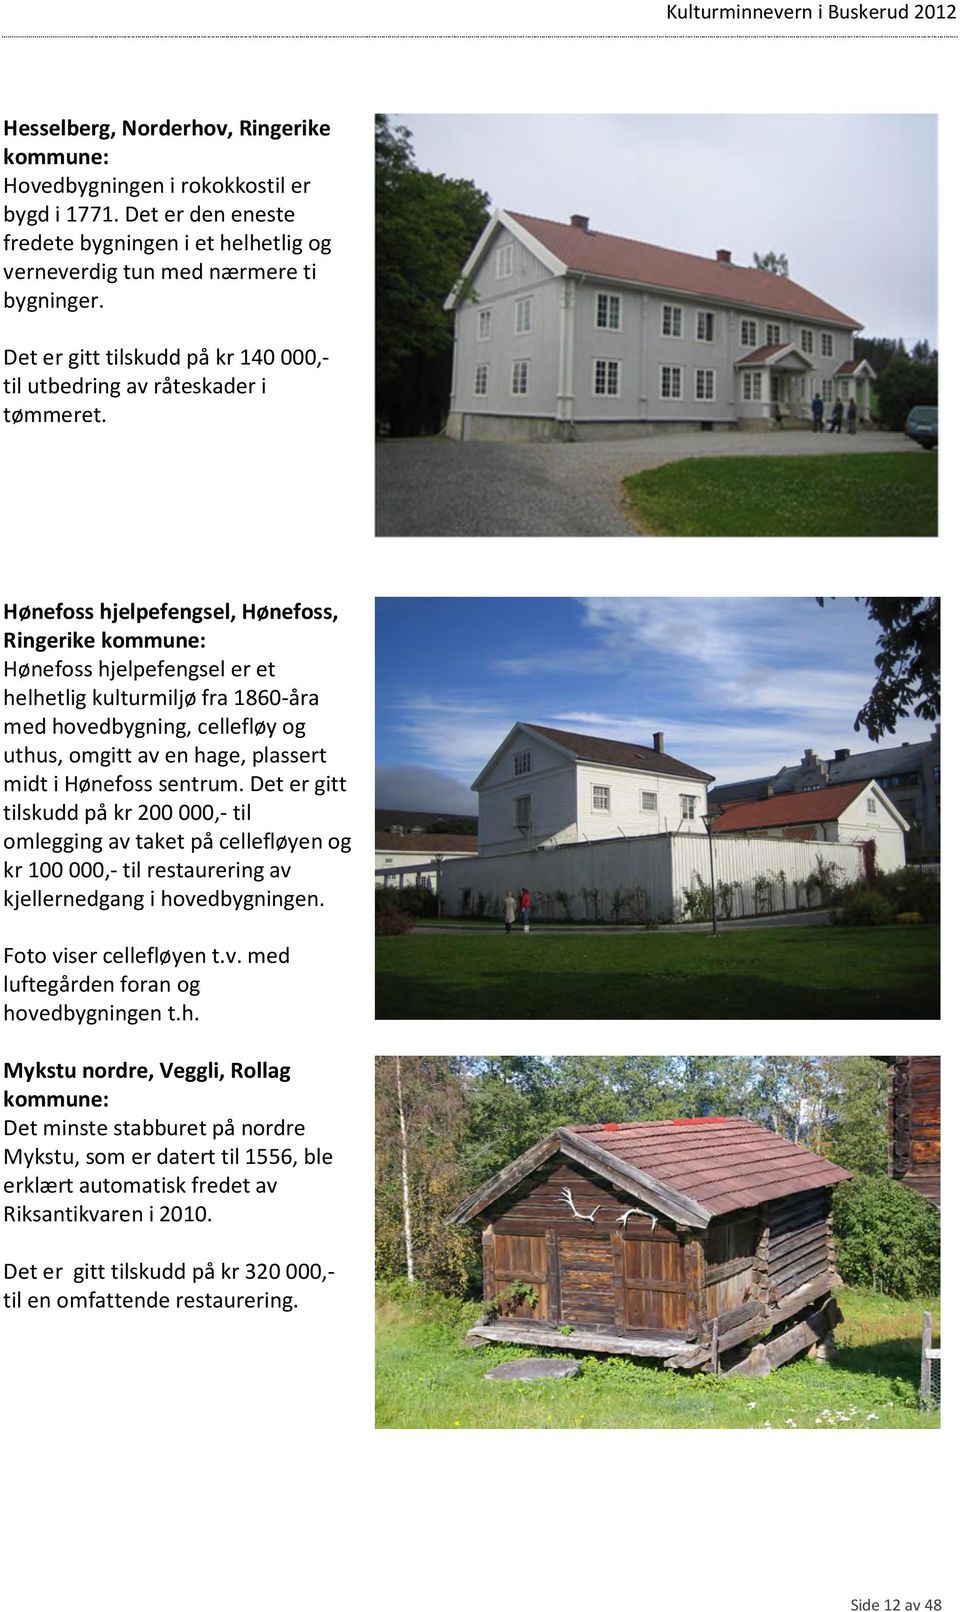 Hønefoss hjelpefengsel, Hønefoss, Ringerike kommune: Hønefoss hjelpefengsel er et helhetlig kulturmiljø fra 1860-åra med hovedbygning, cellefløy og uthus, omgitt av en hage, plassert midt i Hønefoss